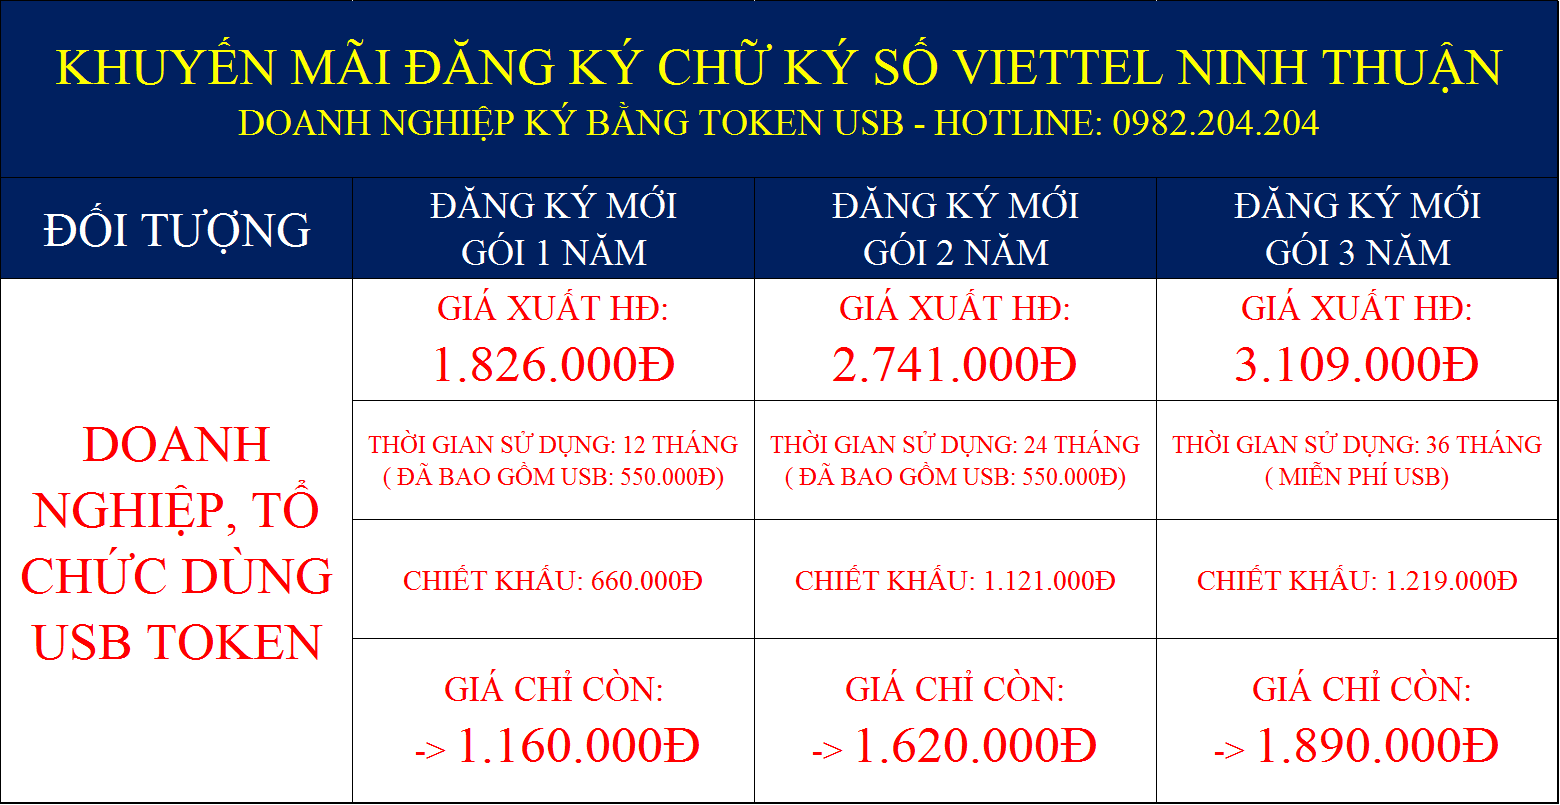 Chữ ký số Viettel Ninh Thuận